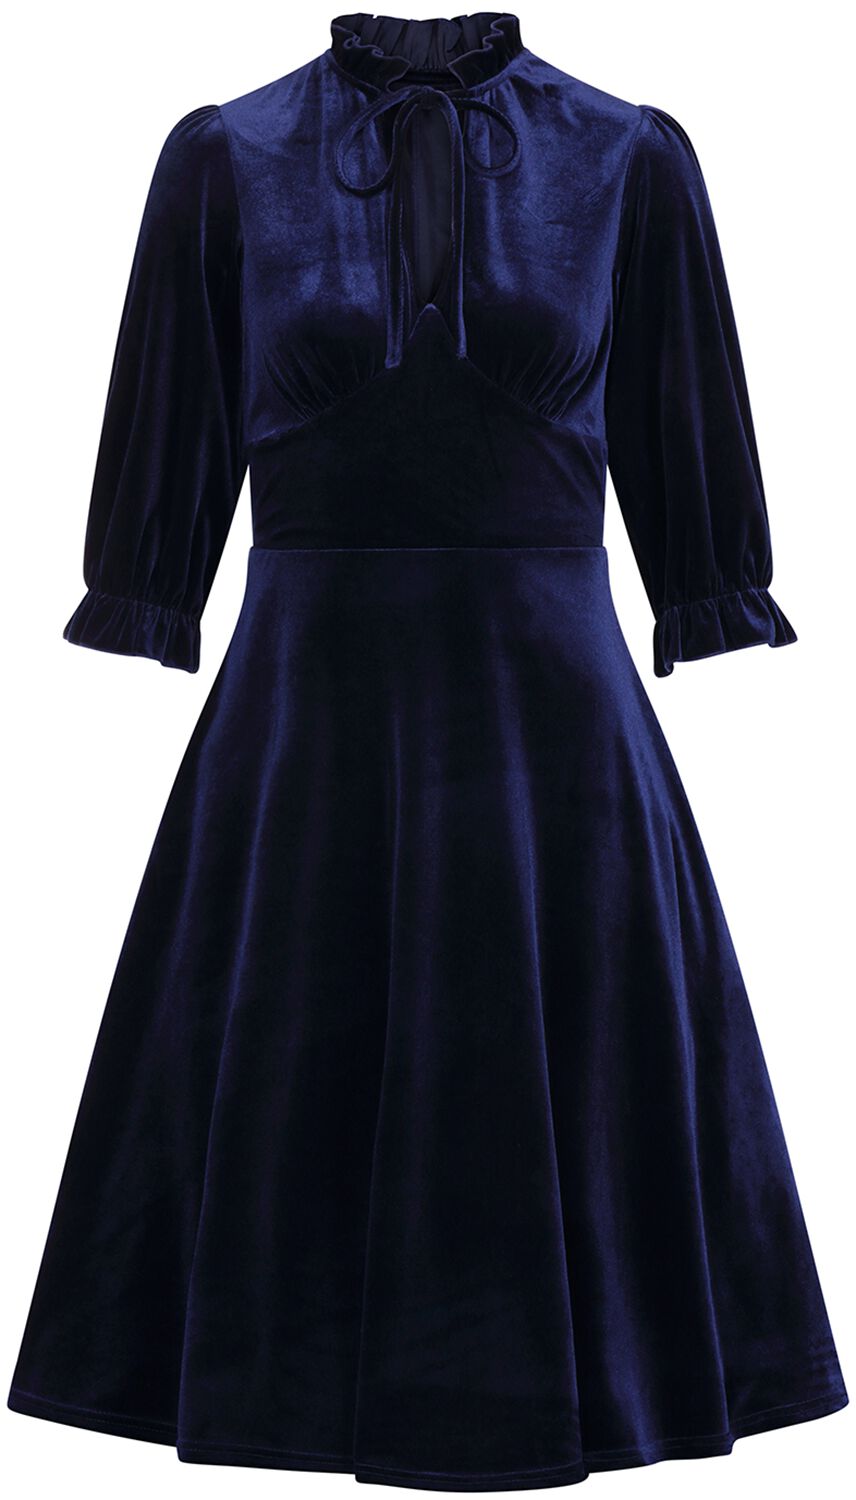 Hell Bunny - Rockabilly Kleid knielang - Orion Dress - XS bis 4XL - für Damen - Größe XS - blau von hell bunny